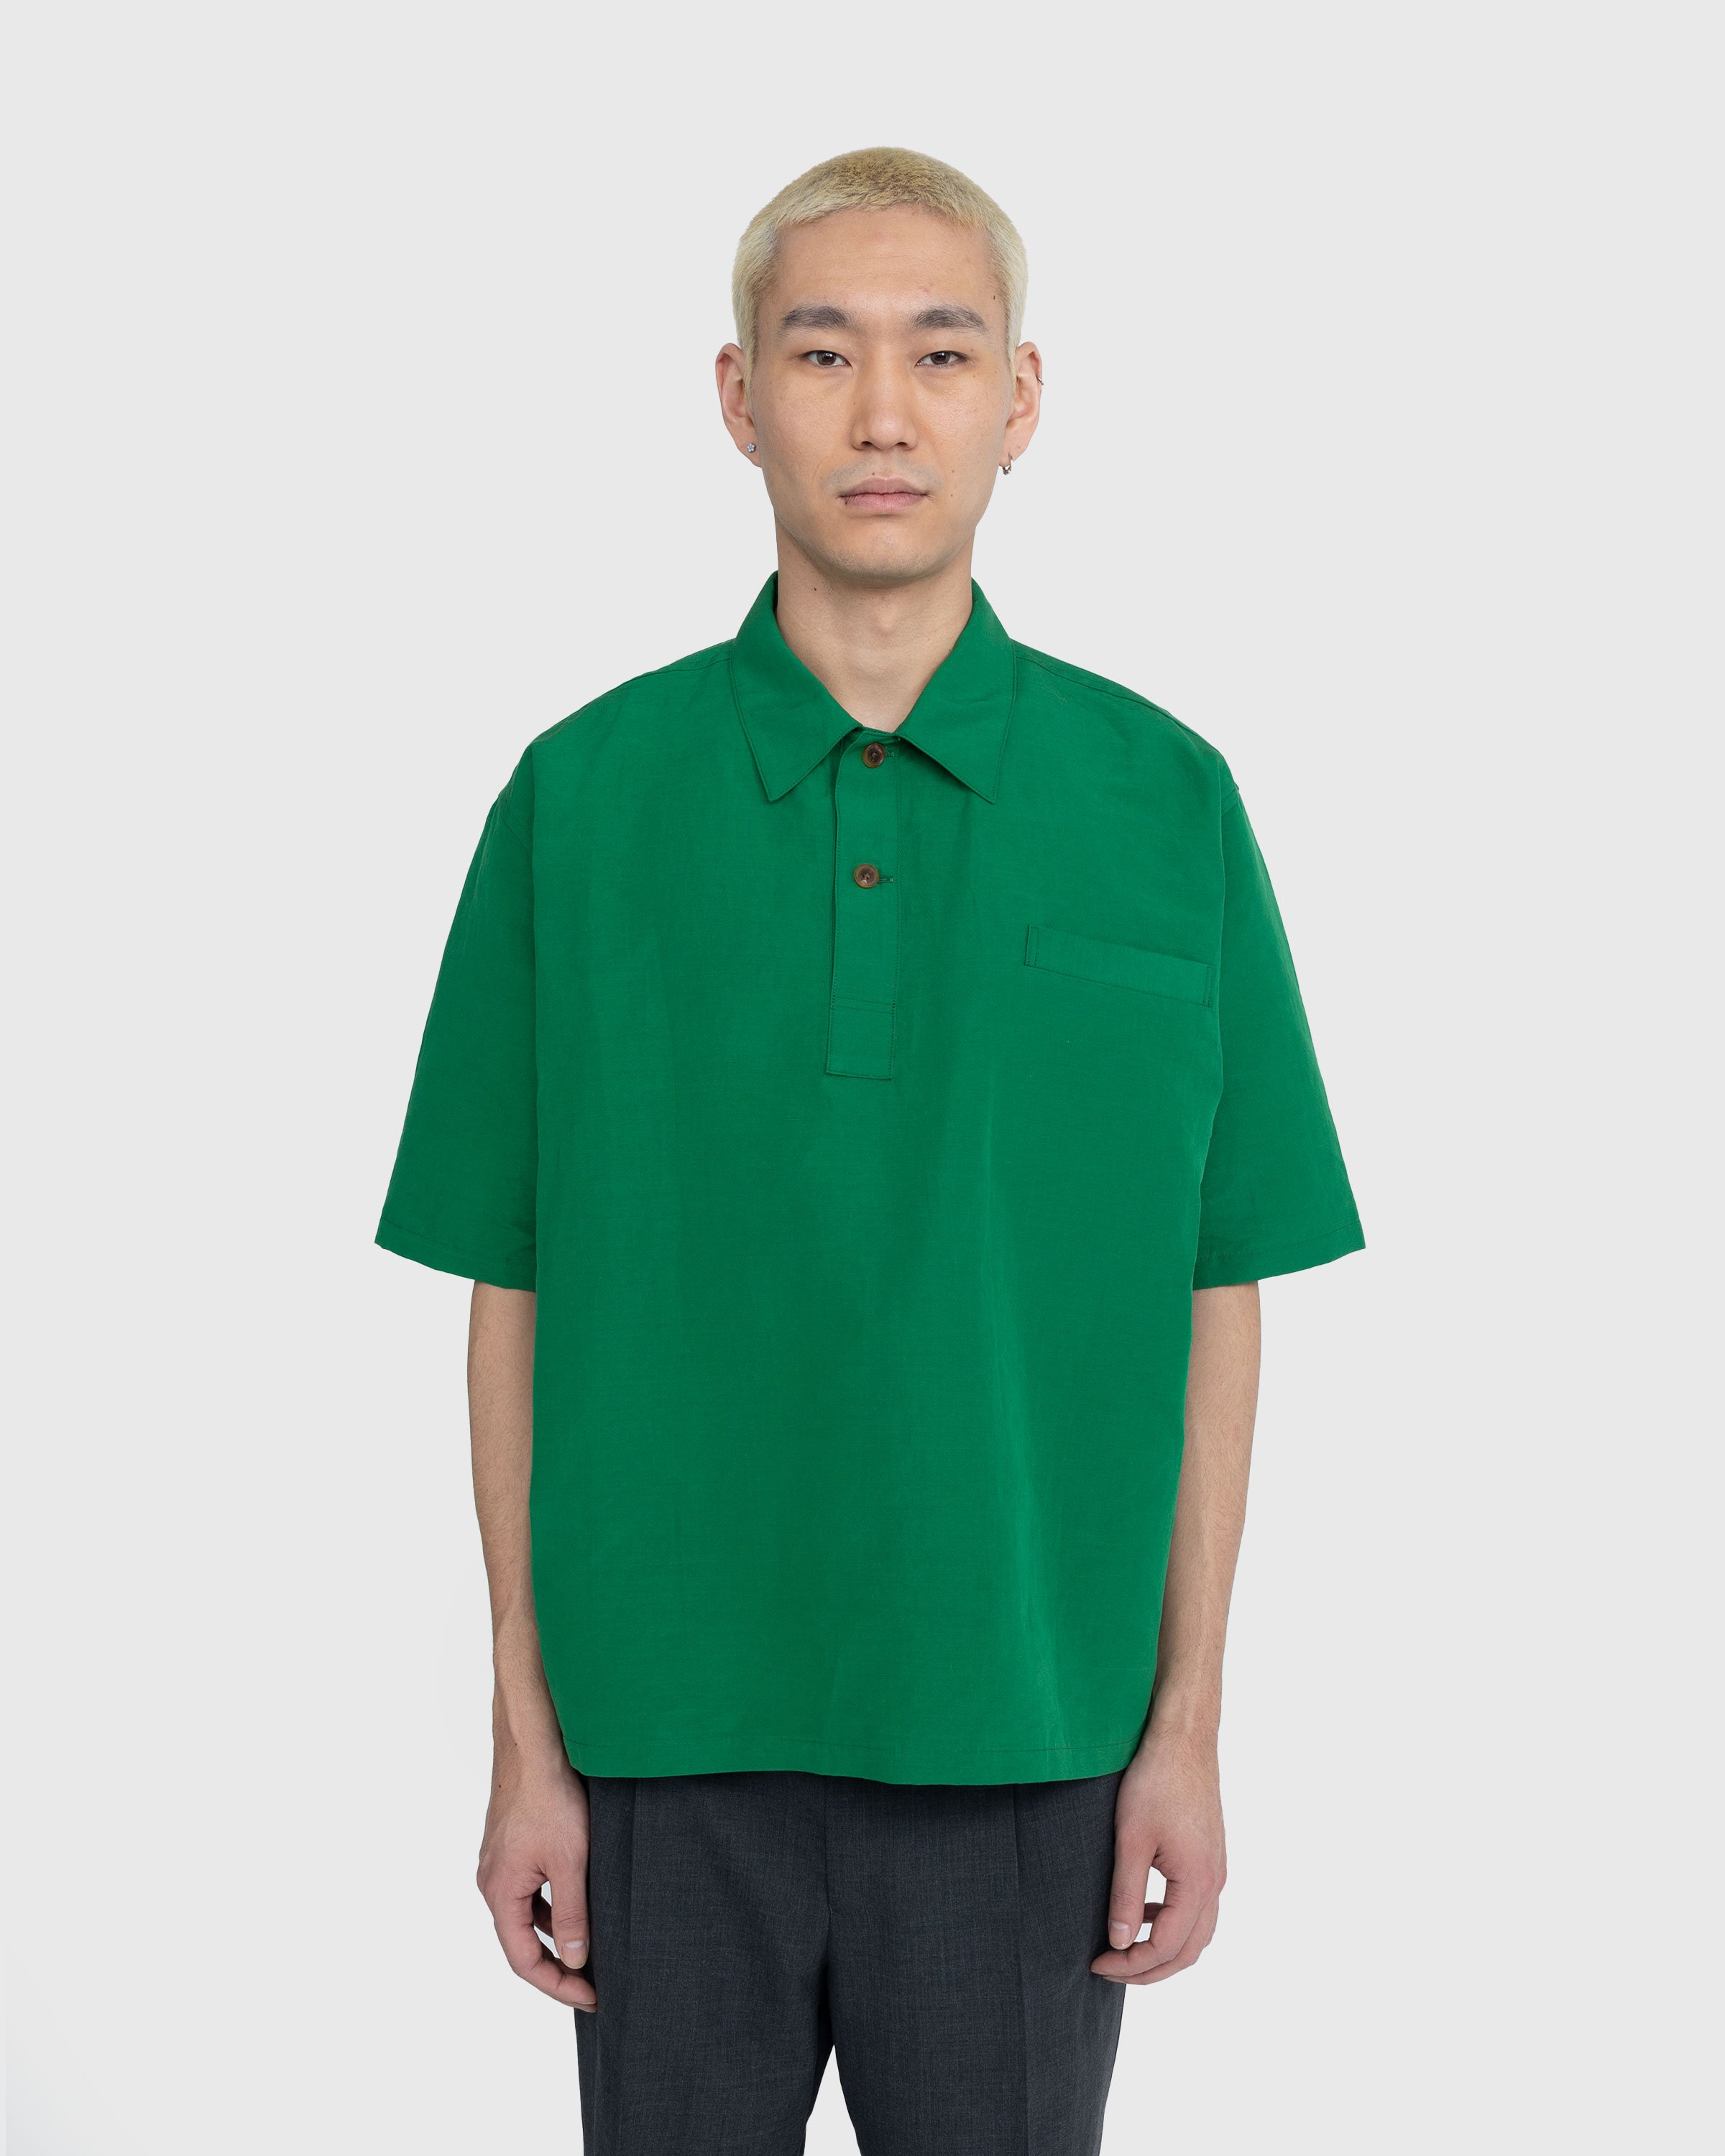 Auralee - High Density Finx Linen Weather Shirt Green - Clothing - Green - Image 2